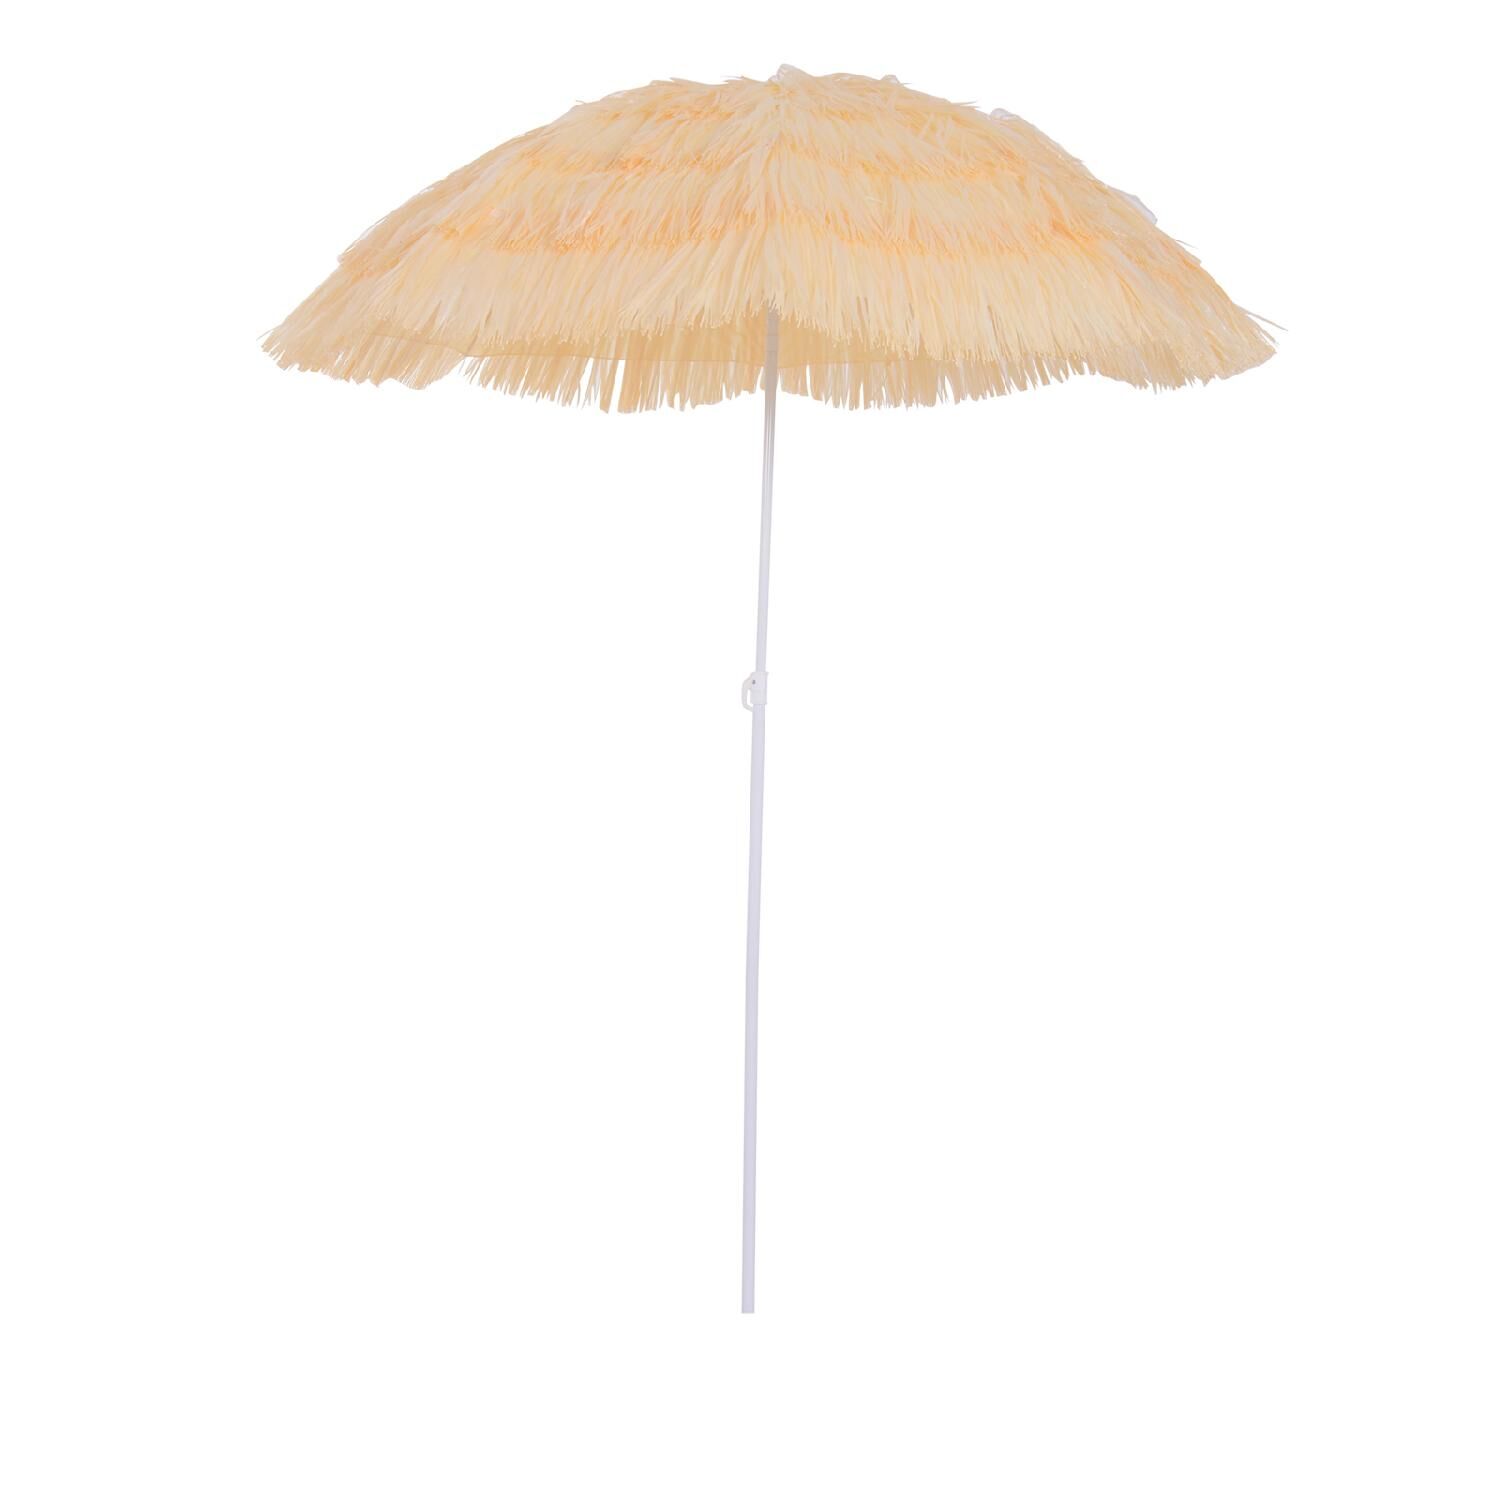 vivagarden 100d5 ombrellone mare da spiaggia Ø 1.6 mt telo in poliestere stile hawaii colore beige - 100d5